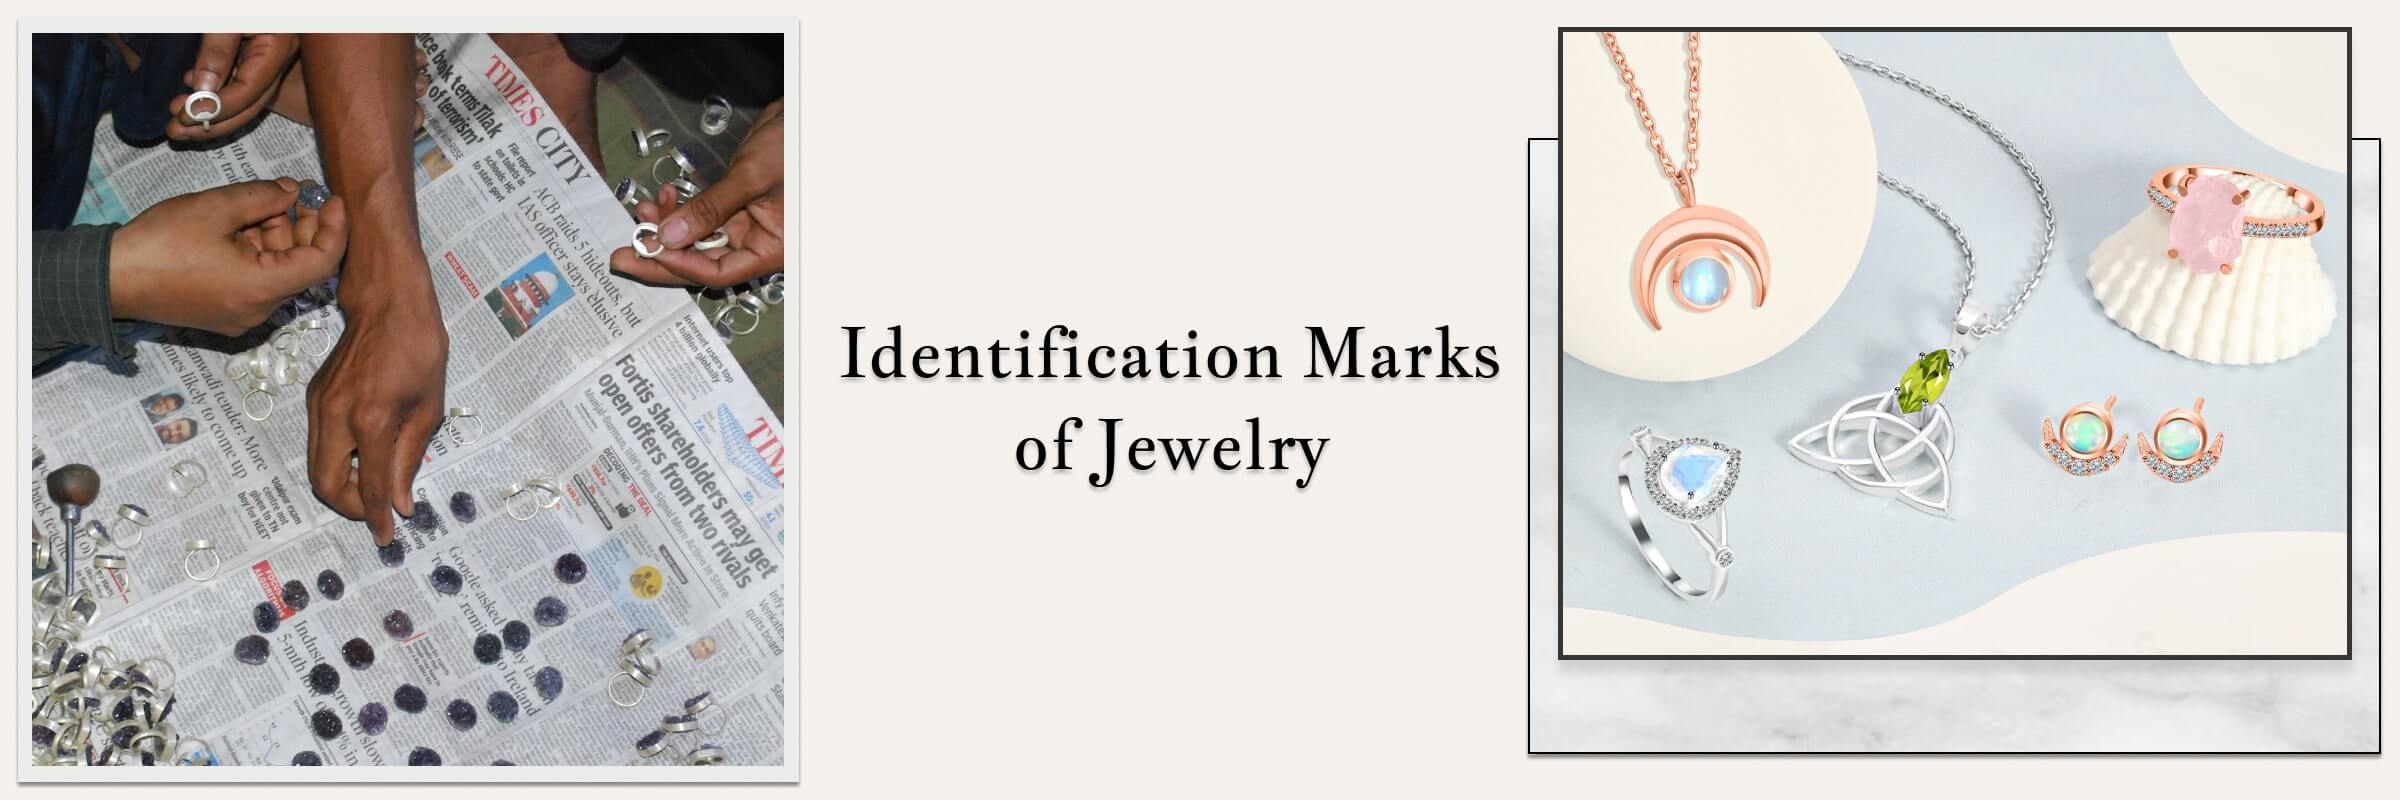 Markings on Jewelry